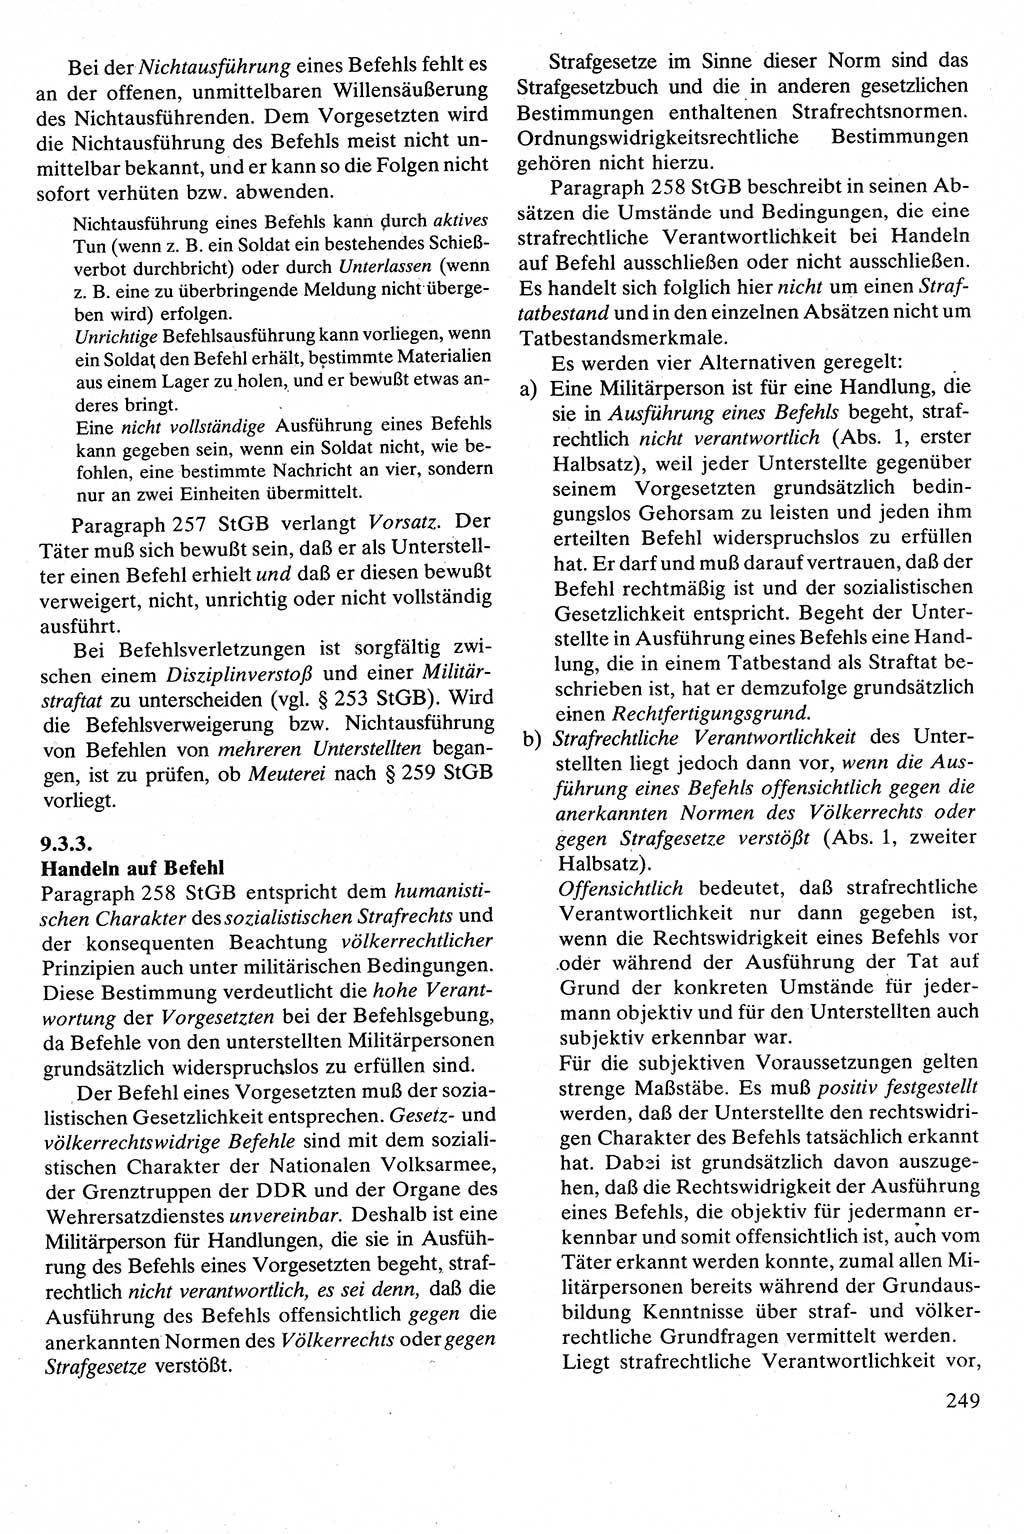 Strafrecht [Deutsche Demokratische Republik (DDR)], Besonderer Teil, Lehrbuch 1981, Seite 249 (Strafr. DDR BT Lb. 1981, S. 249)